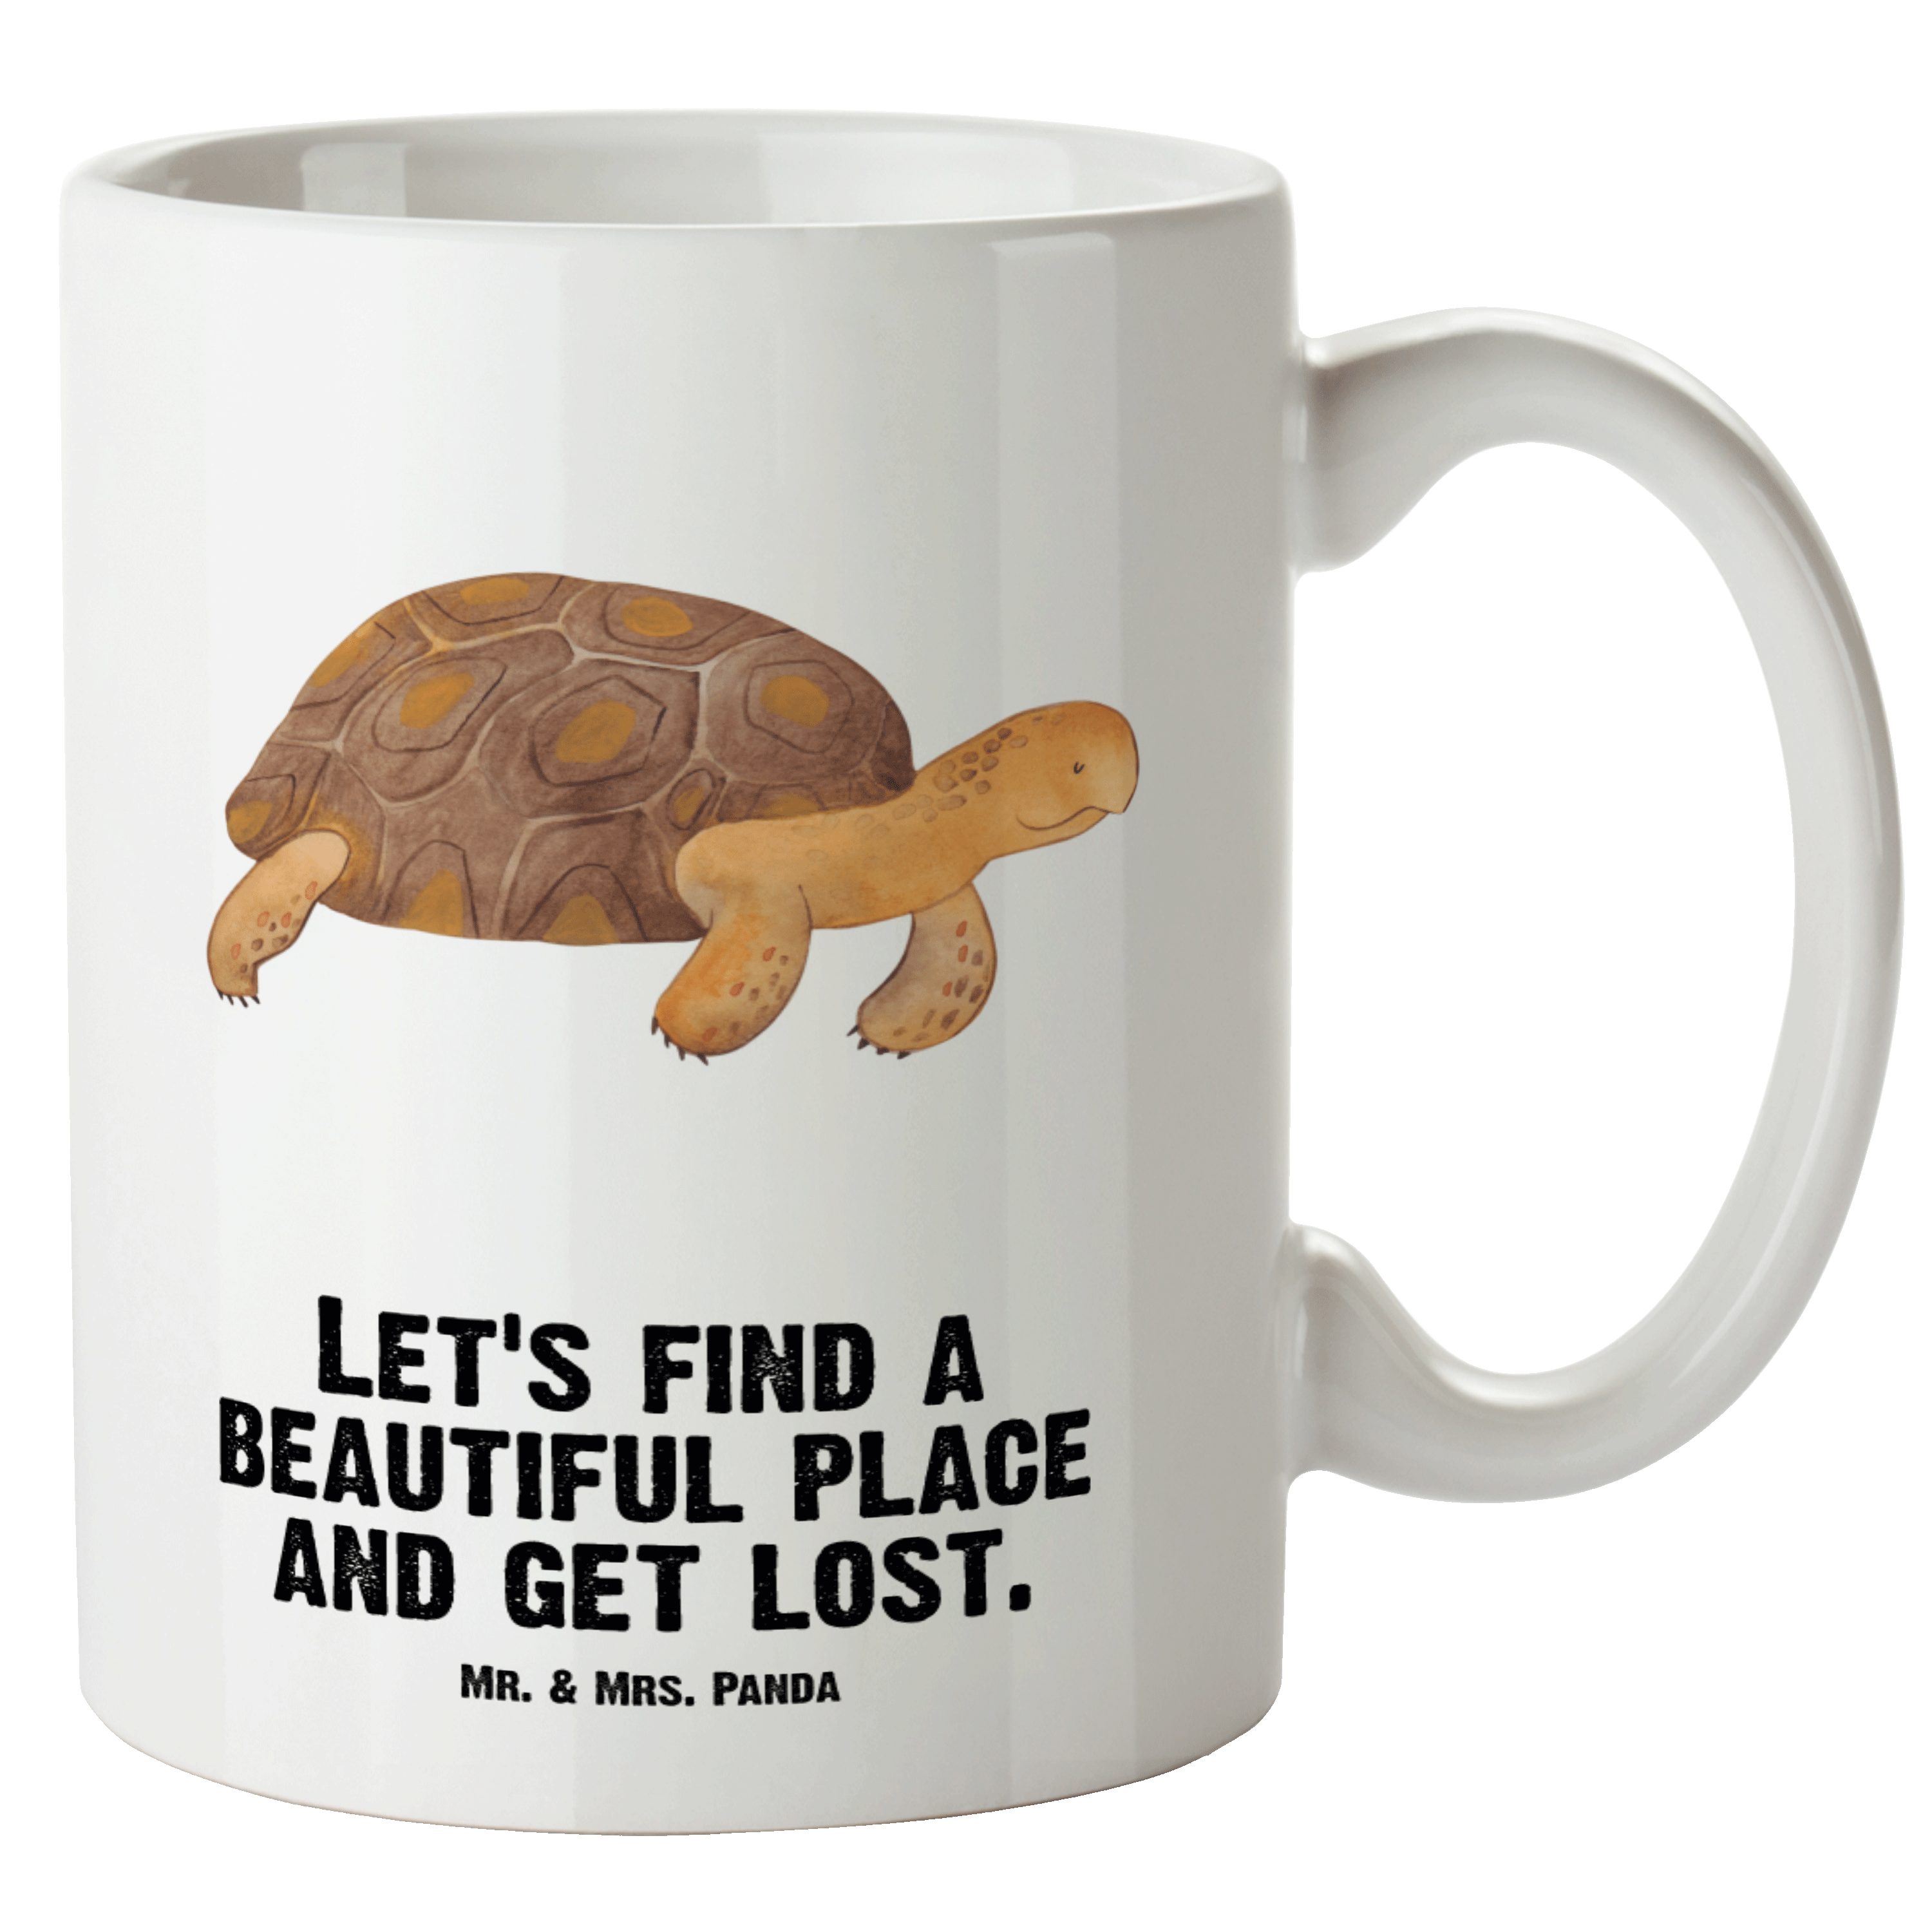 Mr. & Mrs. Panda Tasse Schildkröte marschiert - Weiß - Geschenk, Motivation, Urlaub, XL Bech, XL Tasse Keramik